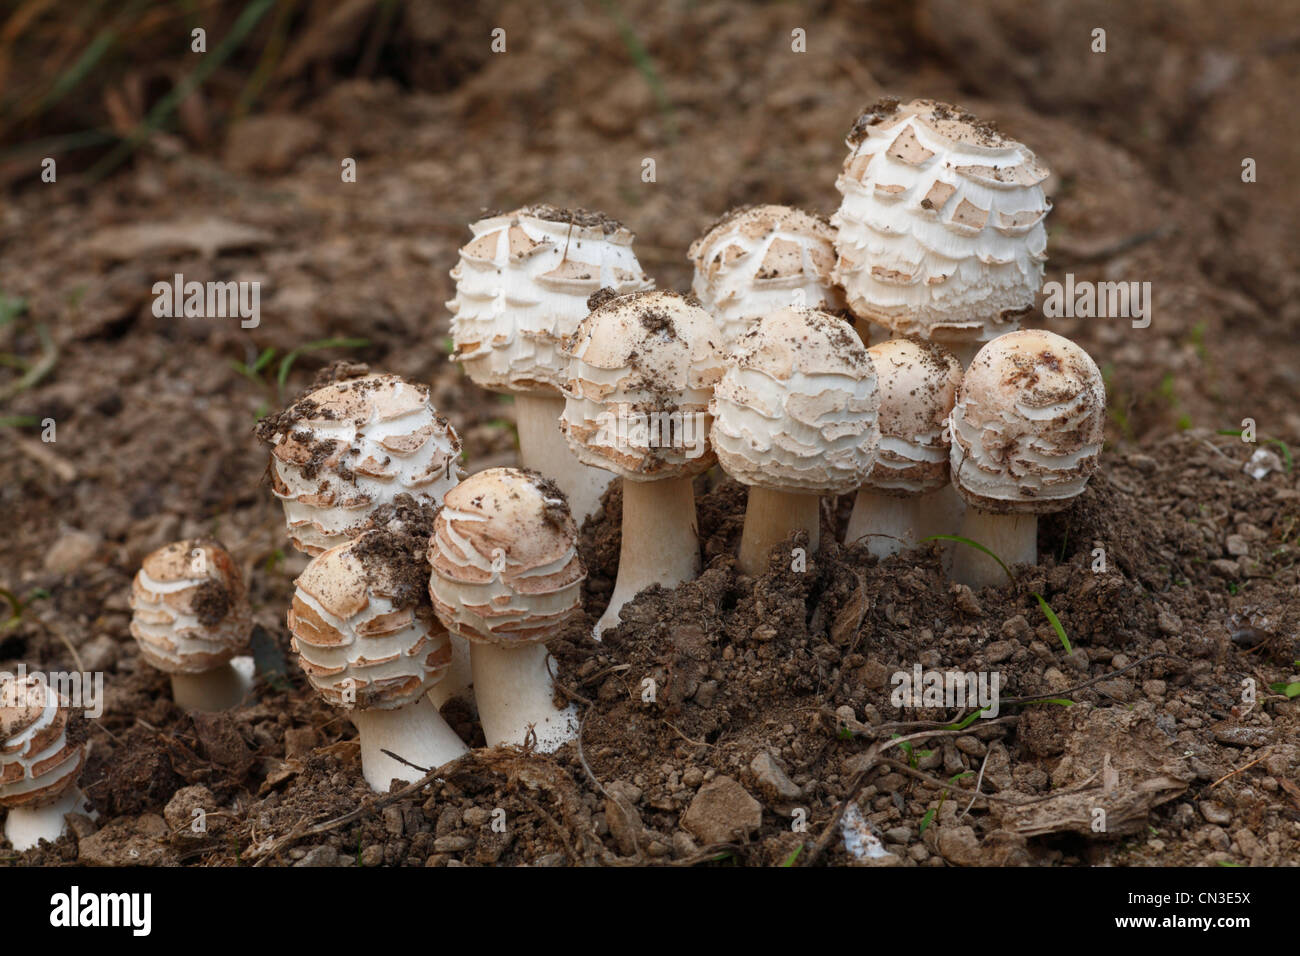 Shaggy Parasol Macrolepiota rhacodes (champignons) groupe d'organes de fructification détachés de la terre. Powys, Pays de Galles. Octobre. Banque D'Images